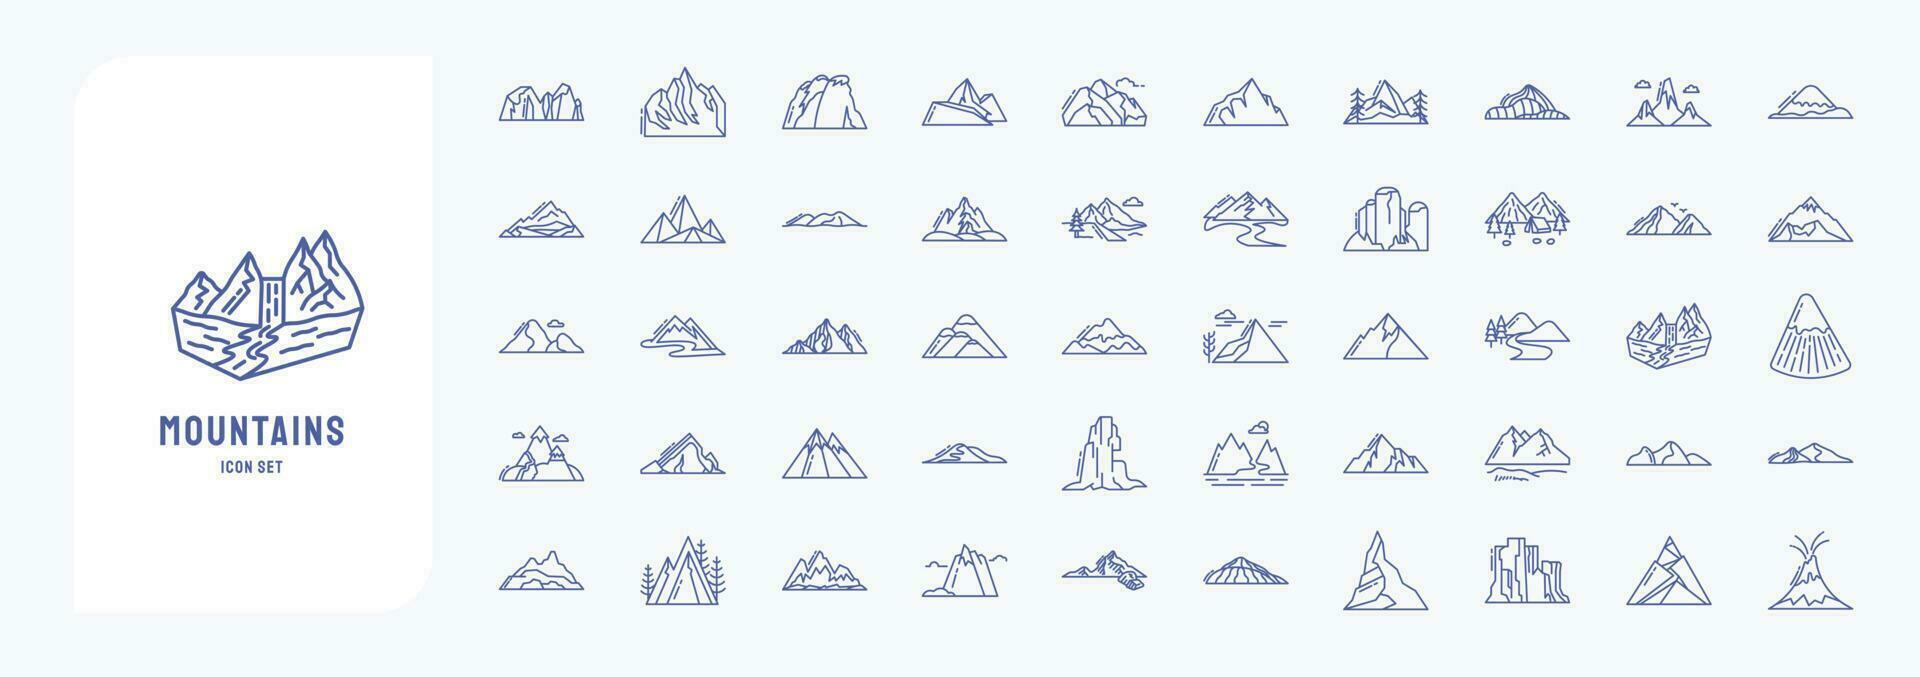 bergen och kullar landskap, Inklusive ikoner tycka om blockera fjäll, föll, kulle, och Mer vektor